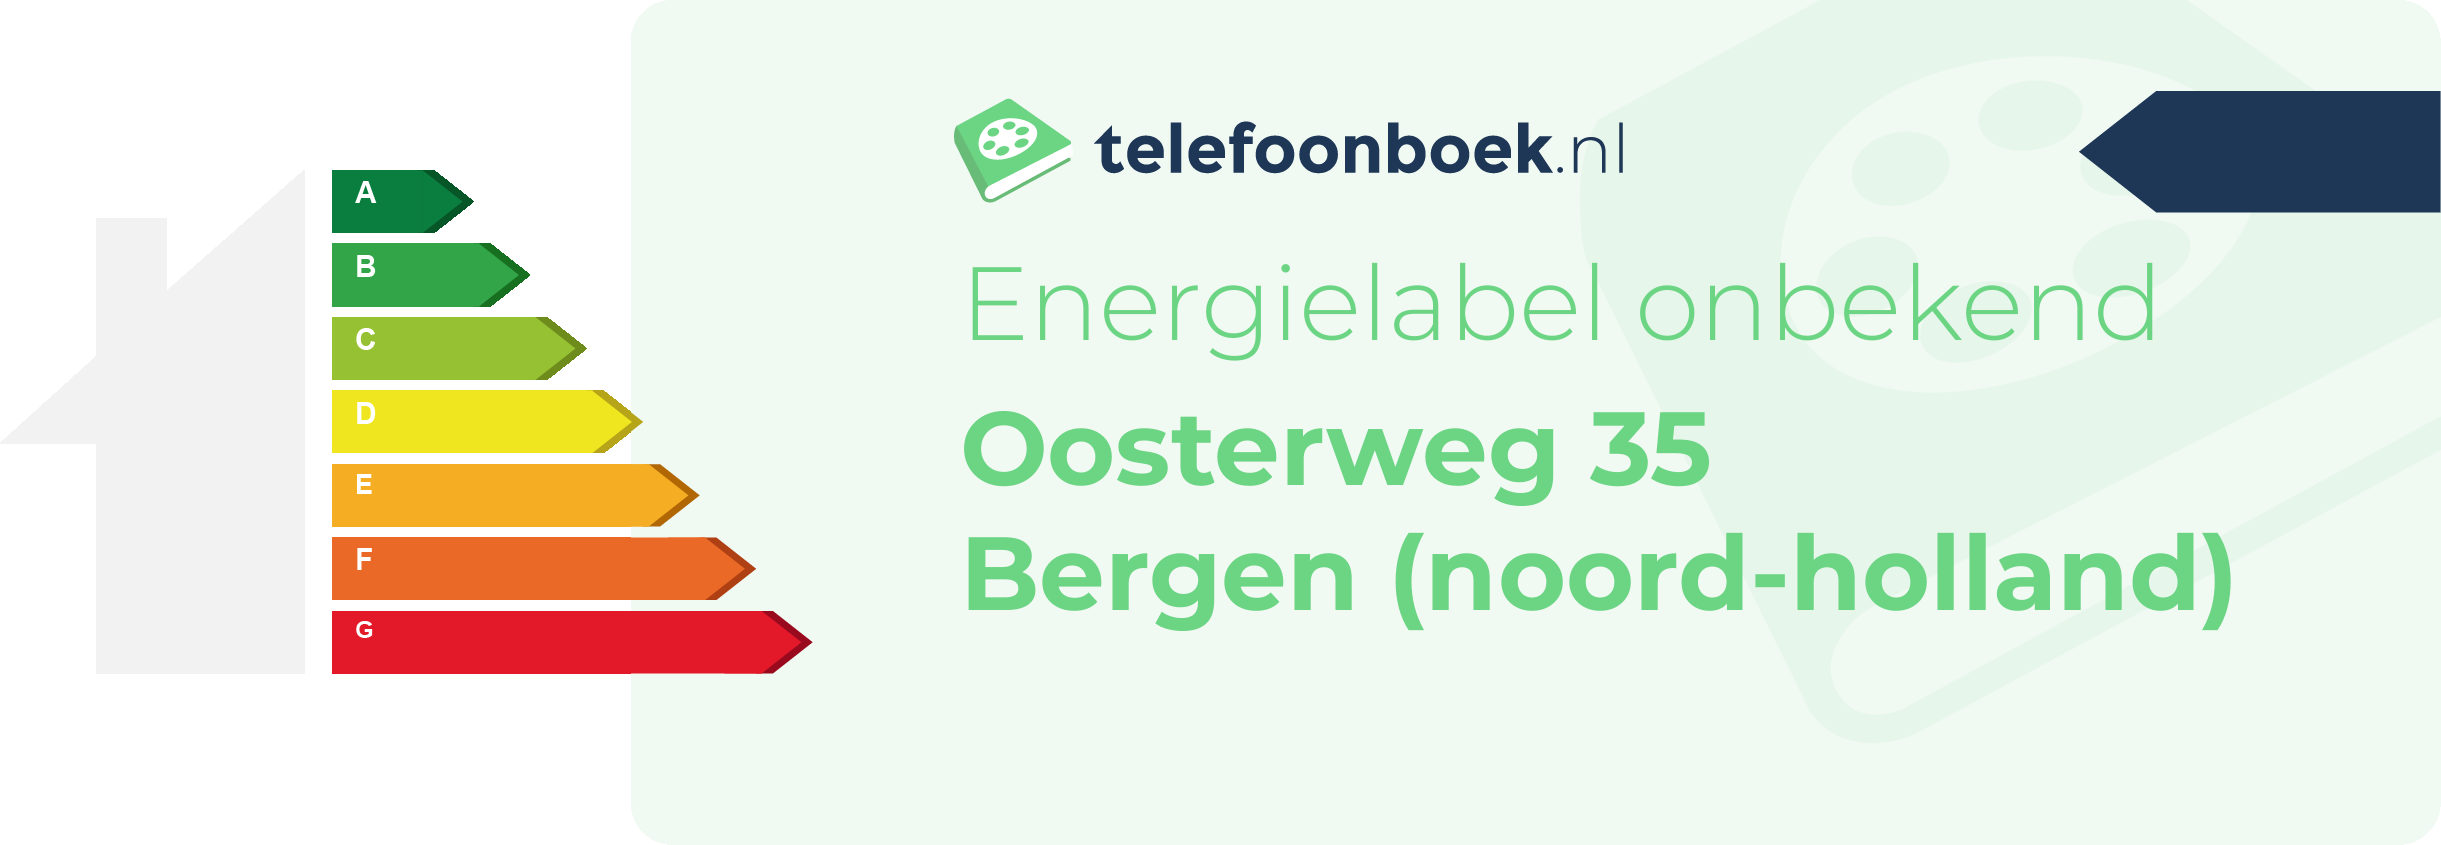 Energielabel Oosterweg 35 Bergen (Noord-Holland)